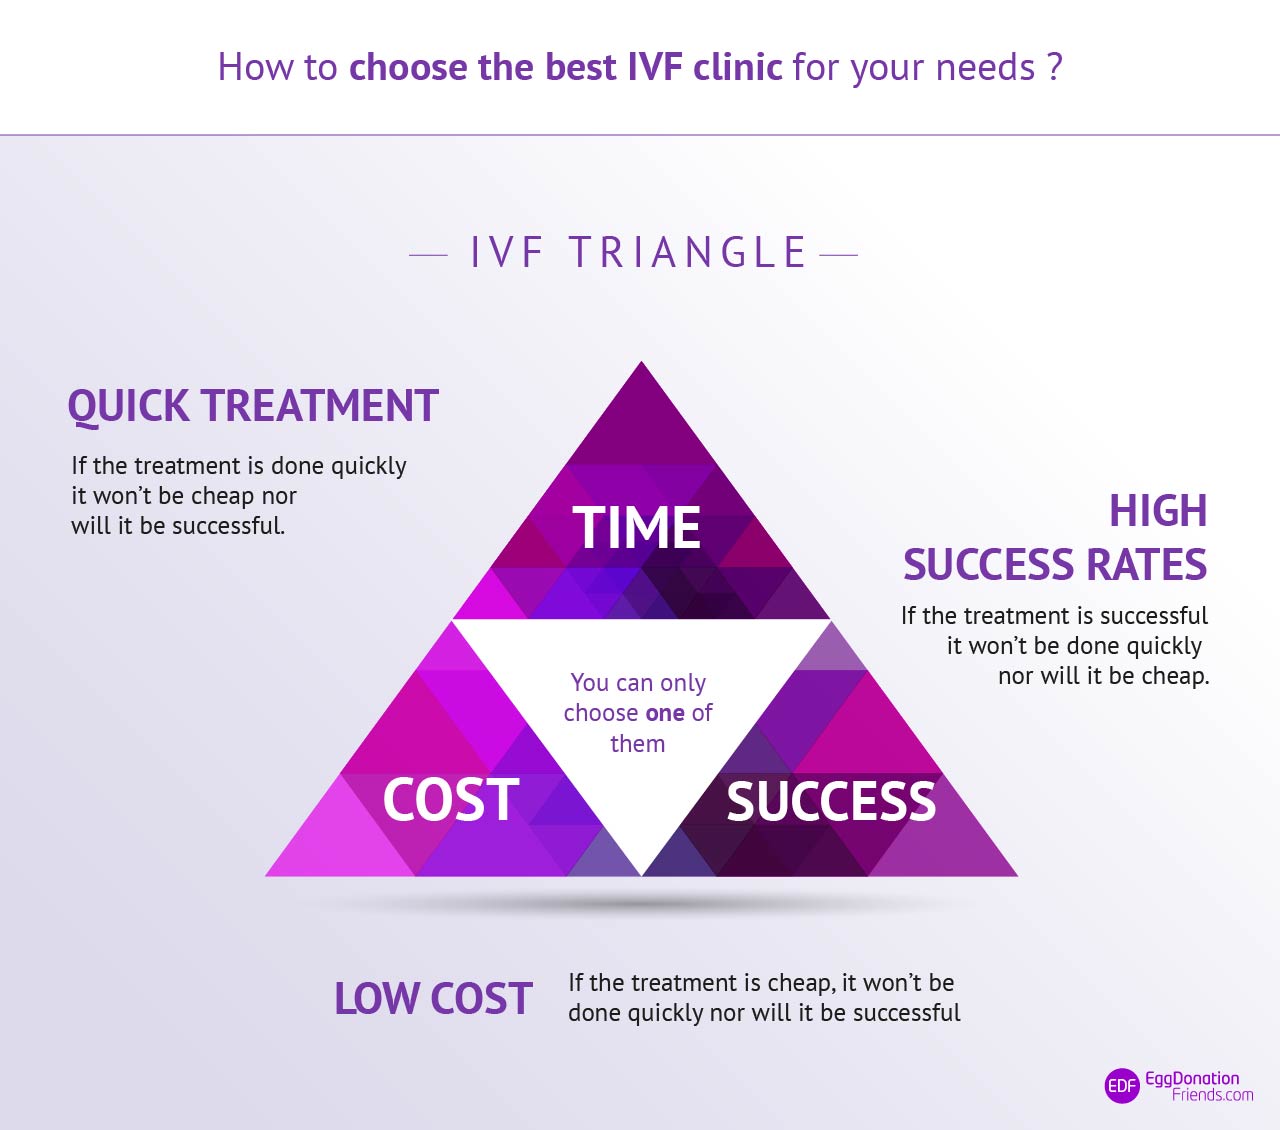 Triangolo IVF - come scegliere la migliore clinica IVF